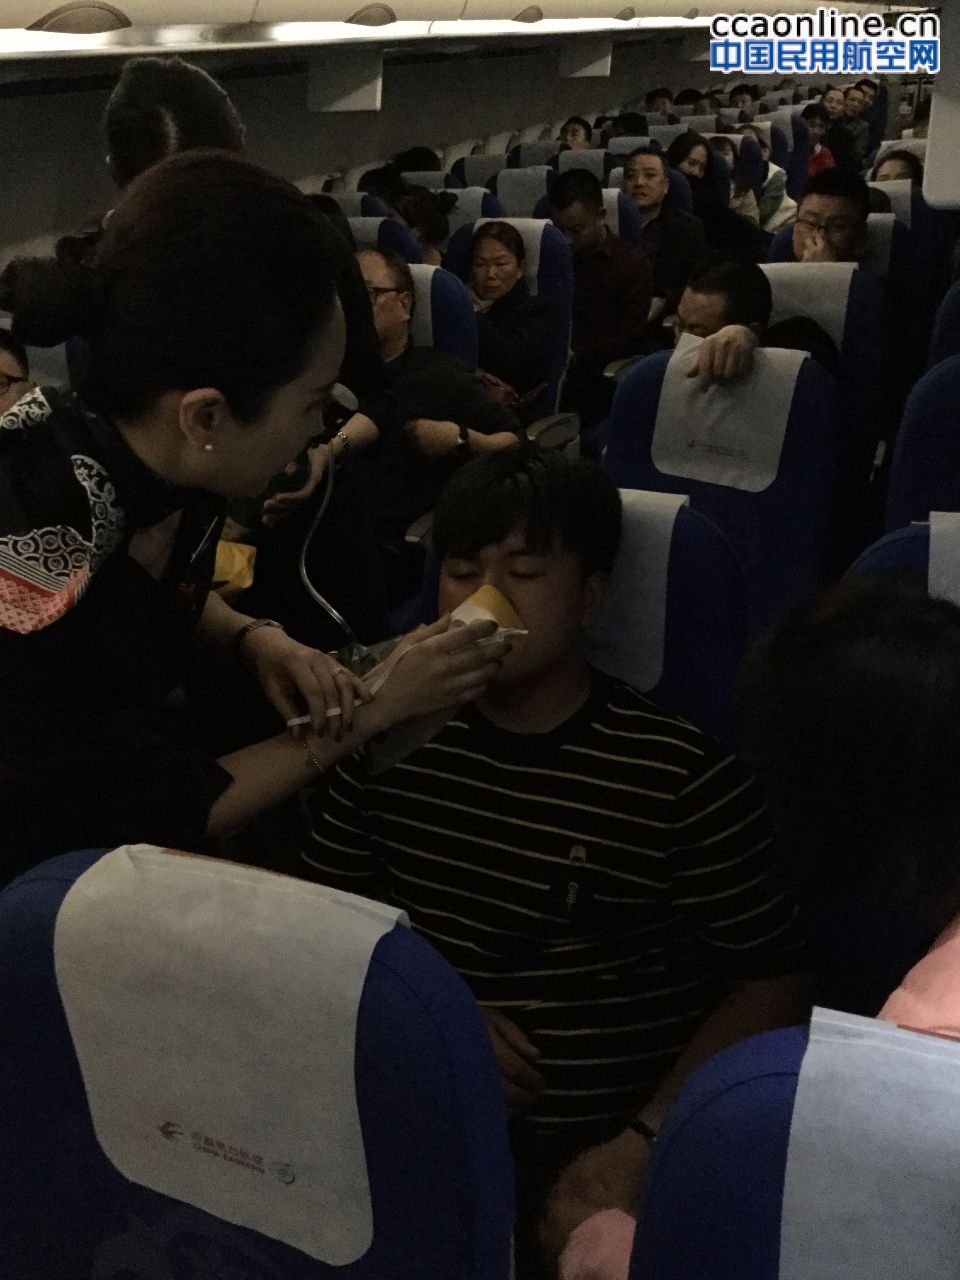 旅客空中多次发病 东航乘务员专业救治平安落地